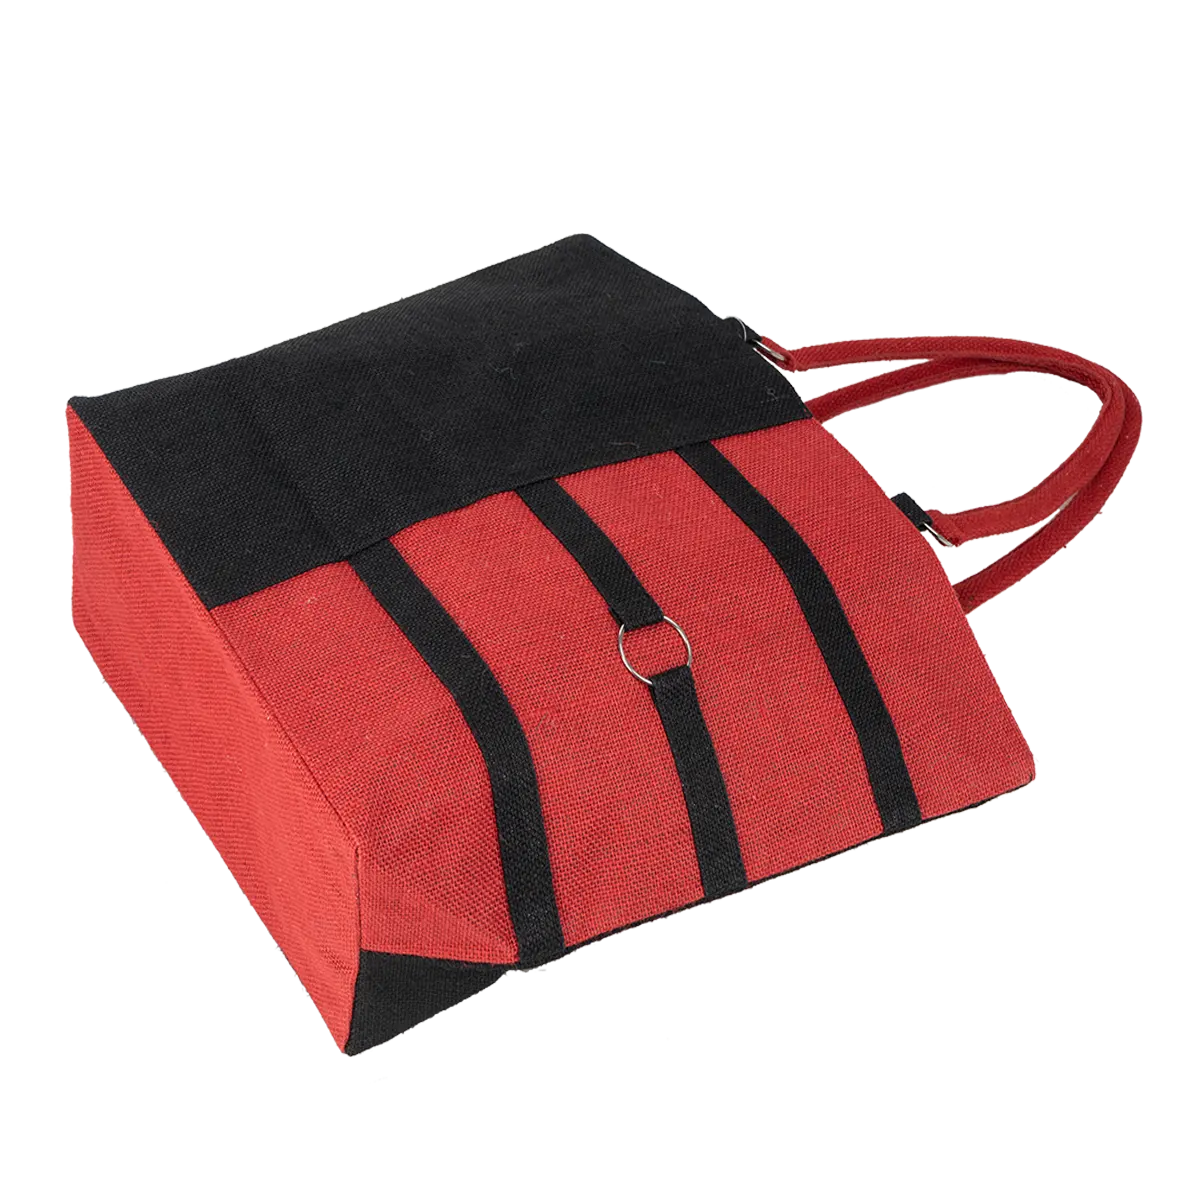 Джутовая модная пляжная сумка для ежедневного использования с сочетанием черного и красного цветов и прочной сумкой на молнии с внутренней стороны